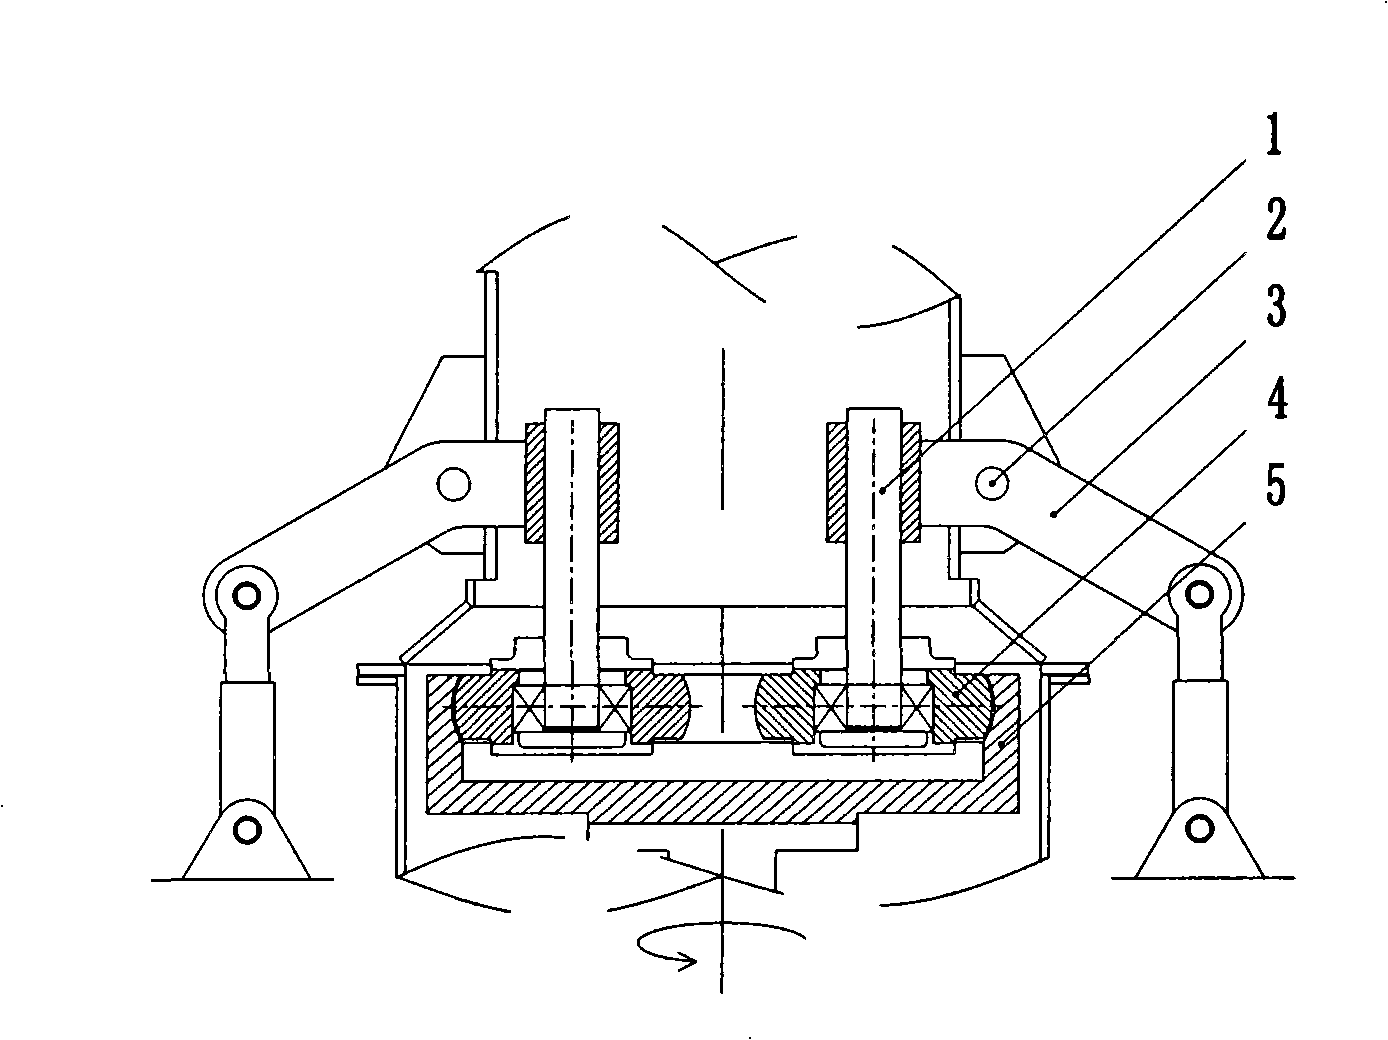 Ring roll mill apparatus